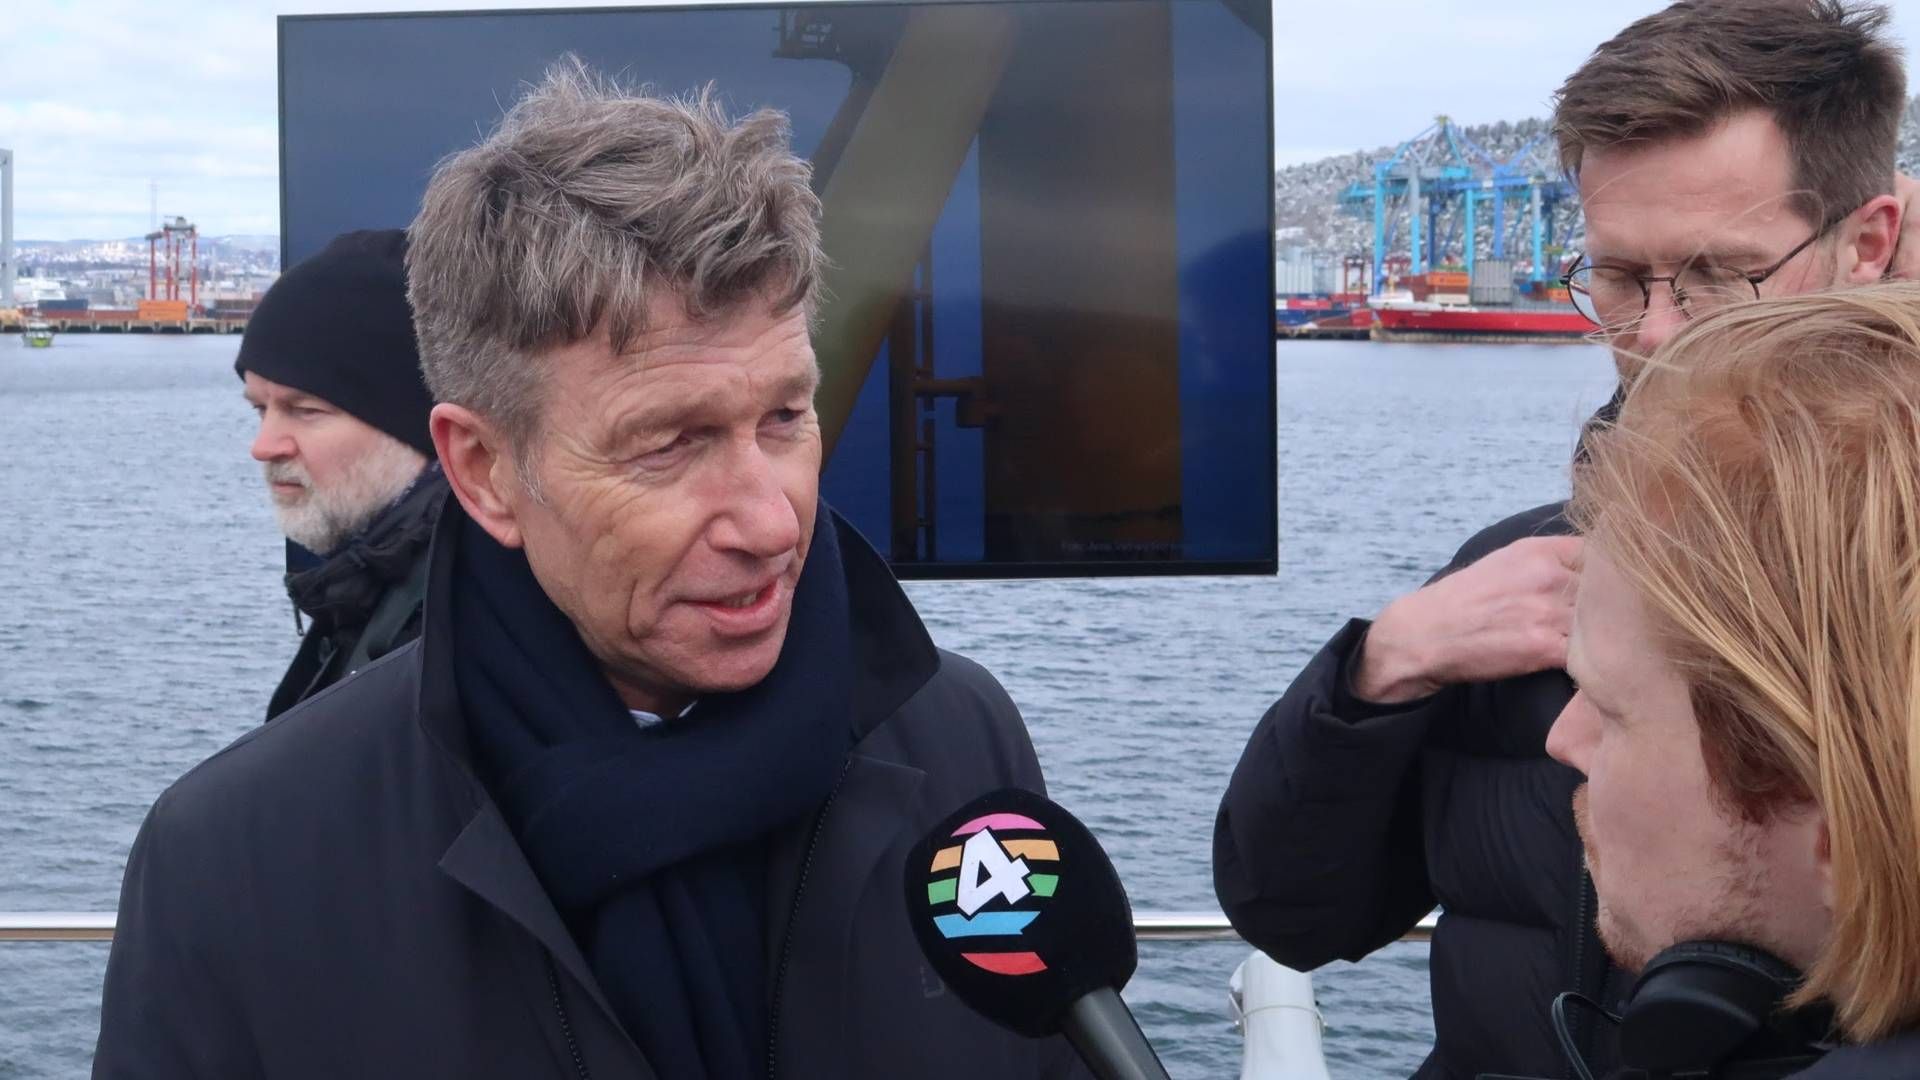 Olje og energiminister Terje Aasland (Ap) ønsker å innskrenke innsynsretten til prekvalifiseringssaker og tildelinger av havvindprosjekter. Det reagerer Fiskebåt – Havfiskeflåtens interesseorganisasjon – kraftig på | Foto: Anders Lie Brenna